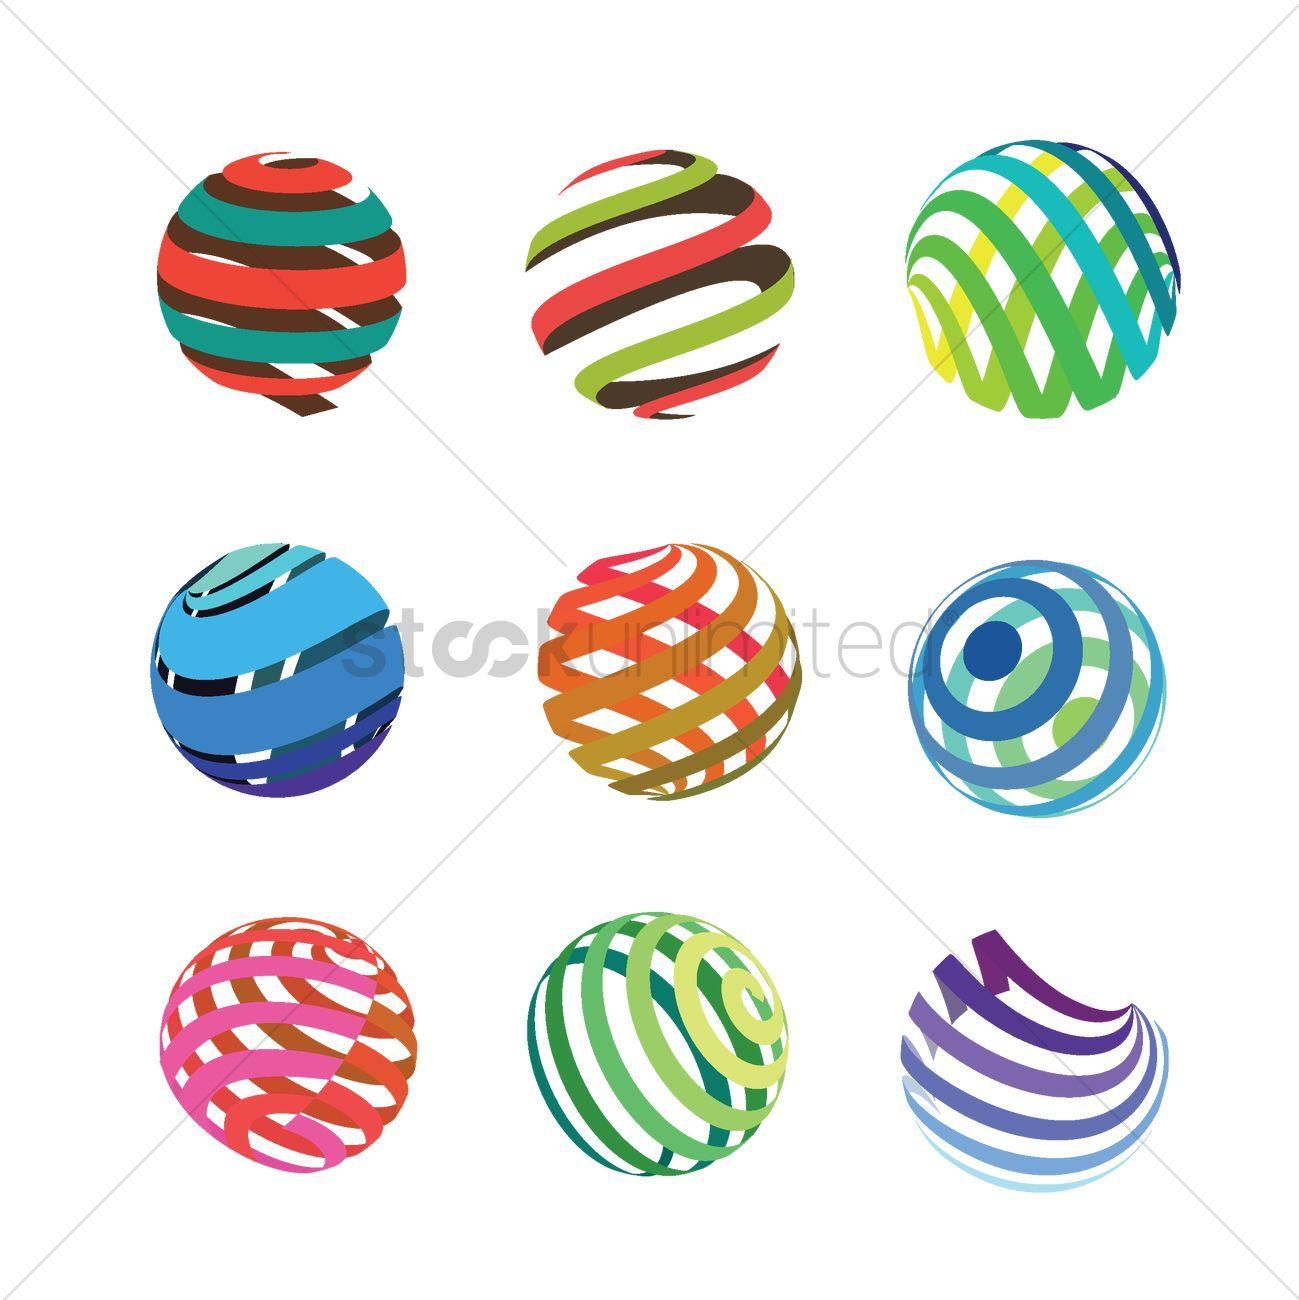 Spherical Logo - Spherical logo element design pack Vector Image